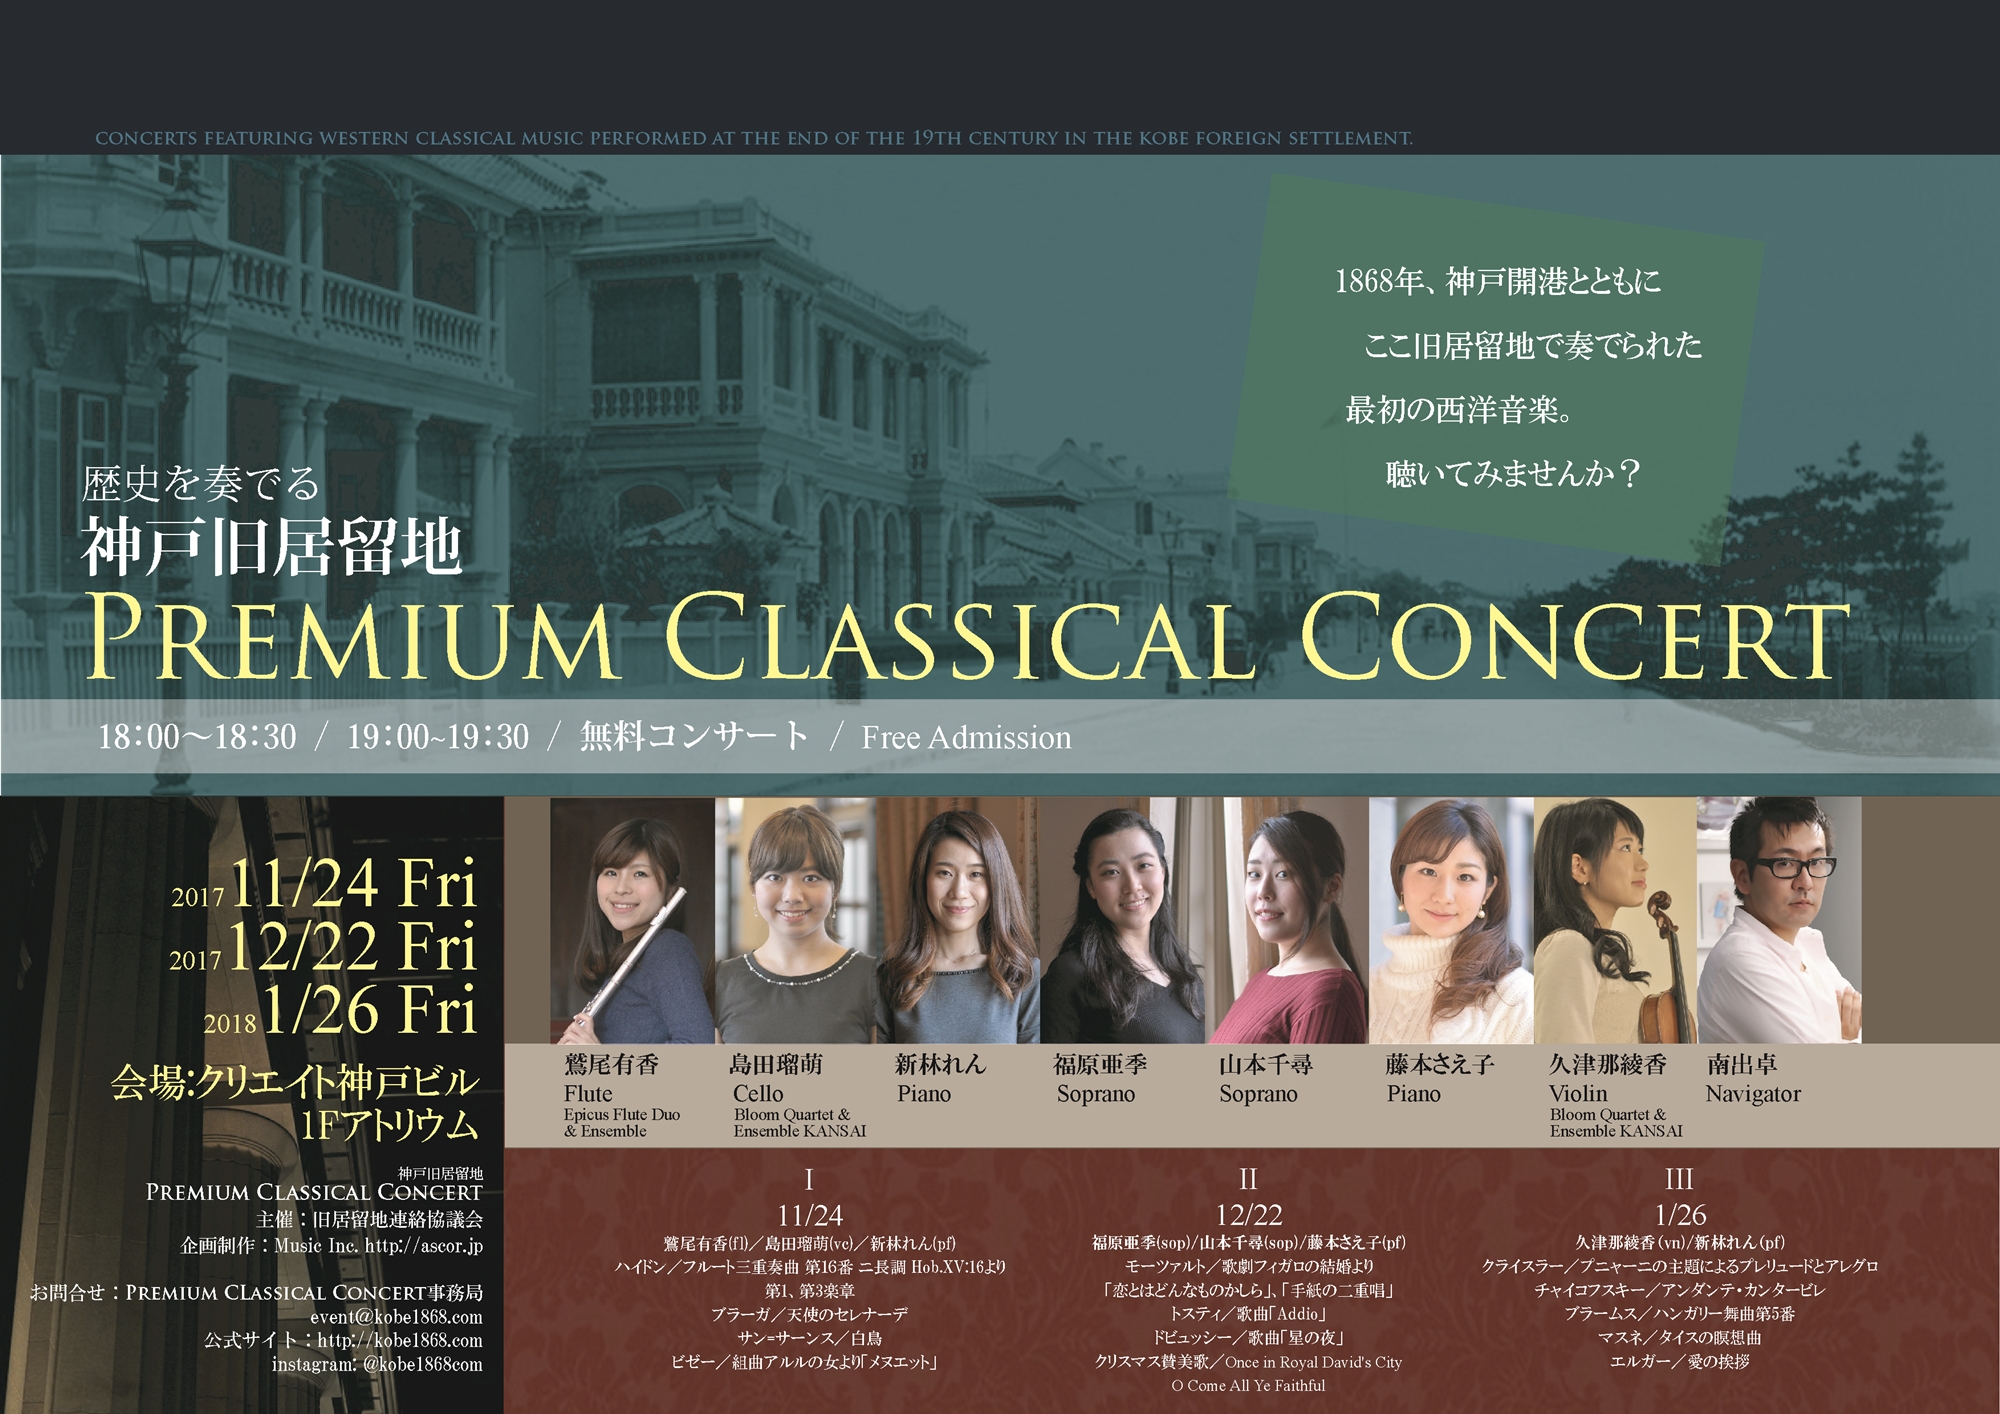 神戸旧居留地Premium Classical Concert、鷲尾有香